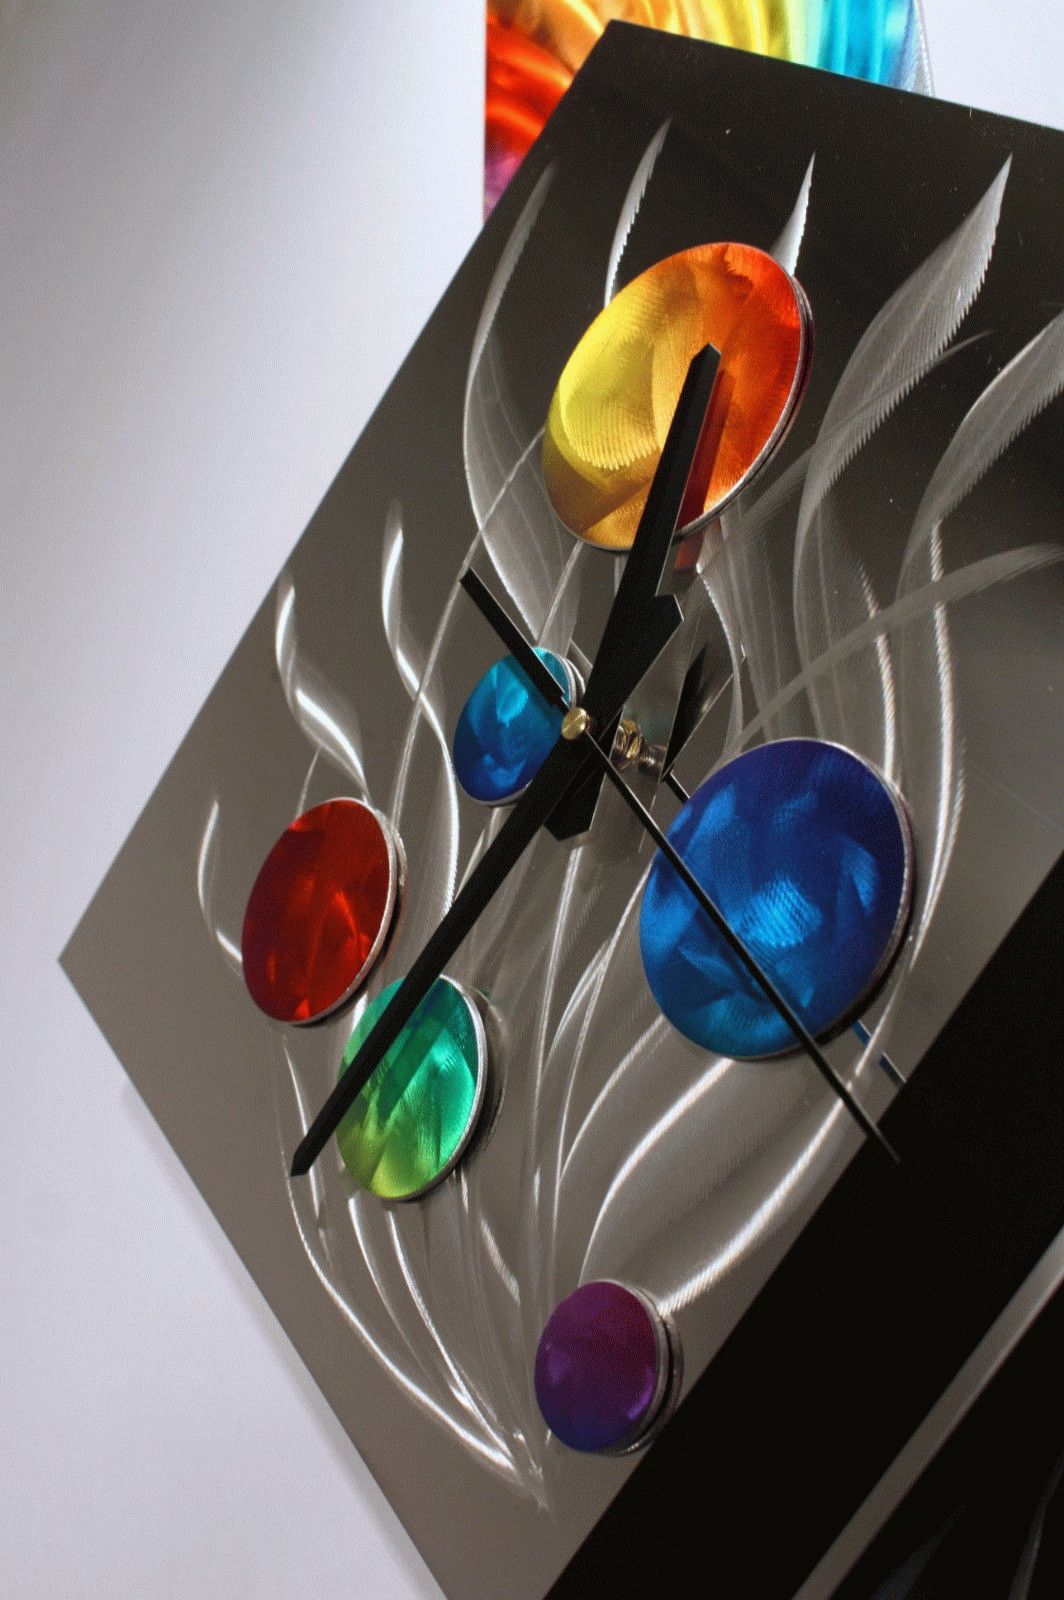 Modern Metal Wall Art Pendulum Clock, Abstract Sculpture Decor Throughout Best And Newest Abstract Metal Wall Art With Clock (View 3 of 20)